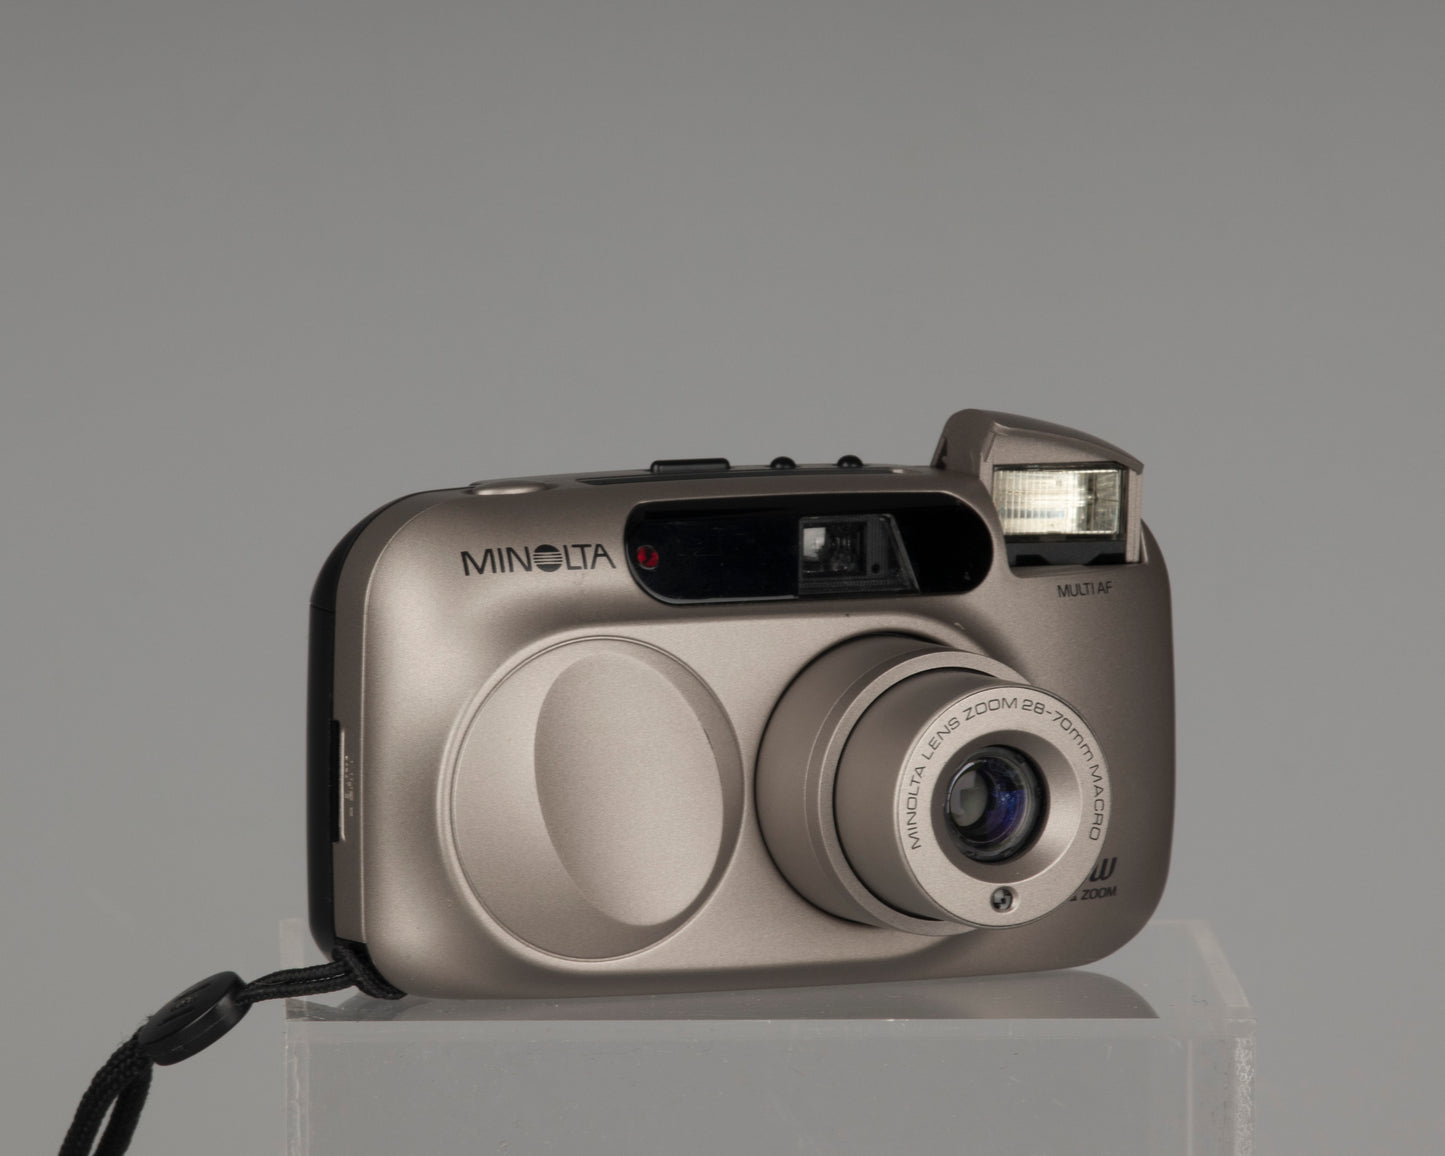 Minolta Riva Zoom 70W 35mm camera